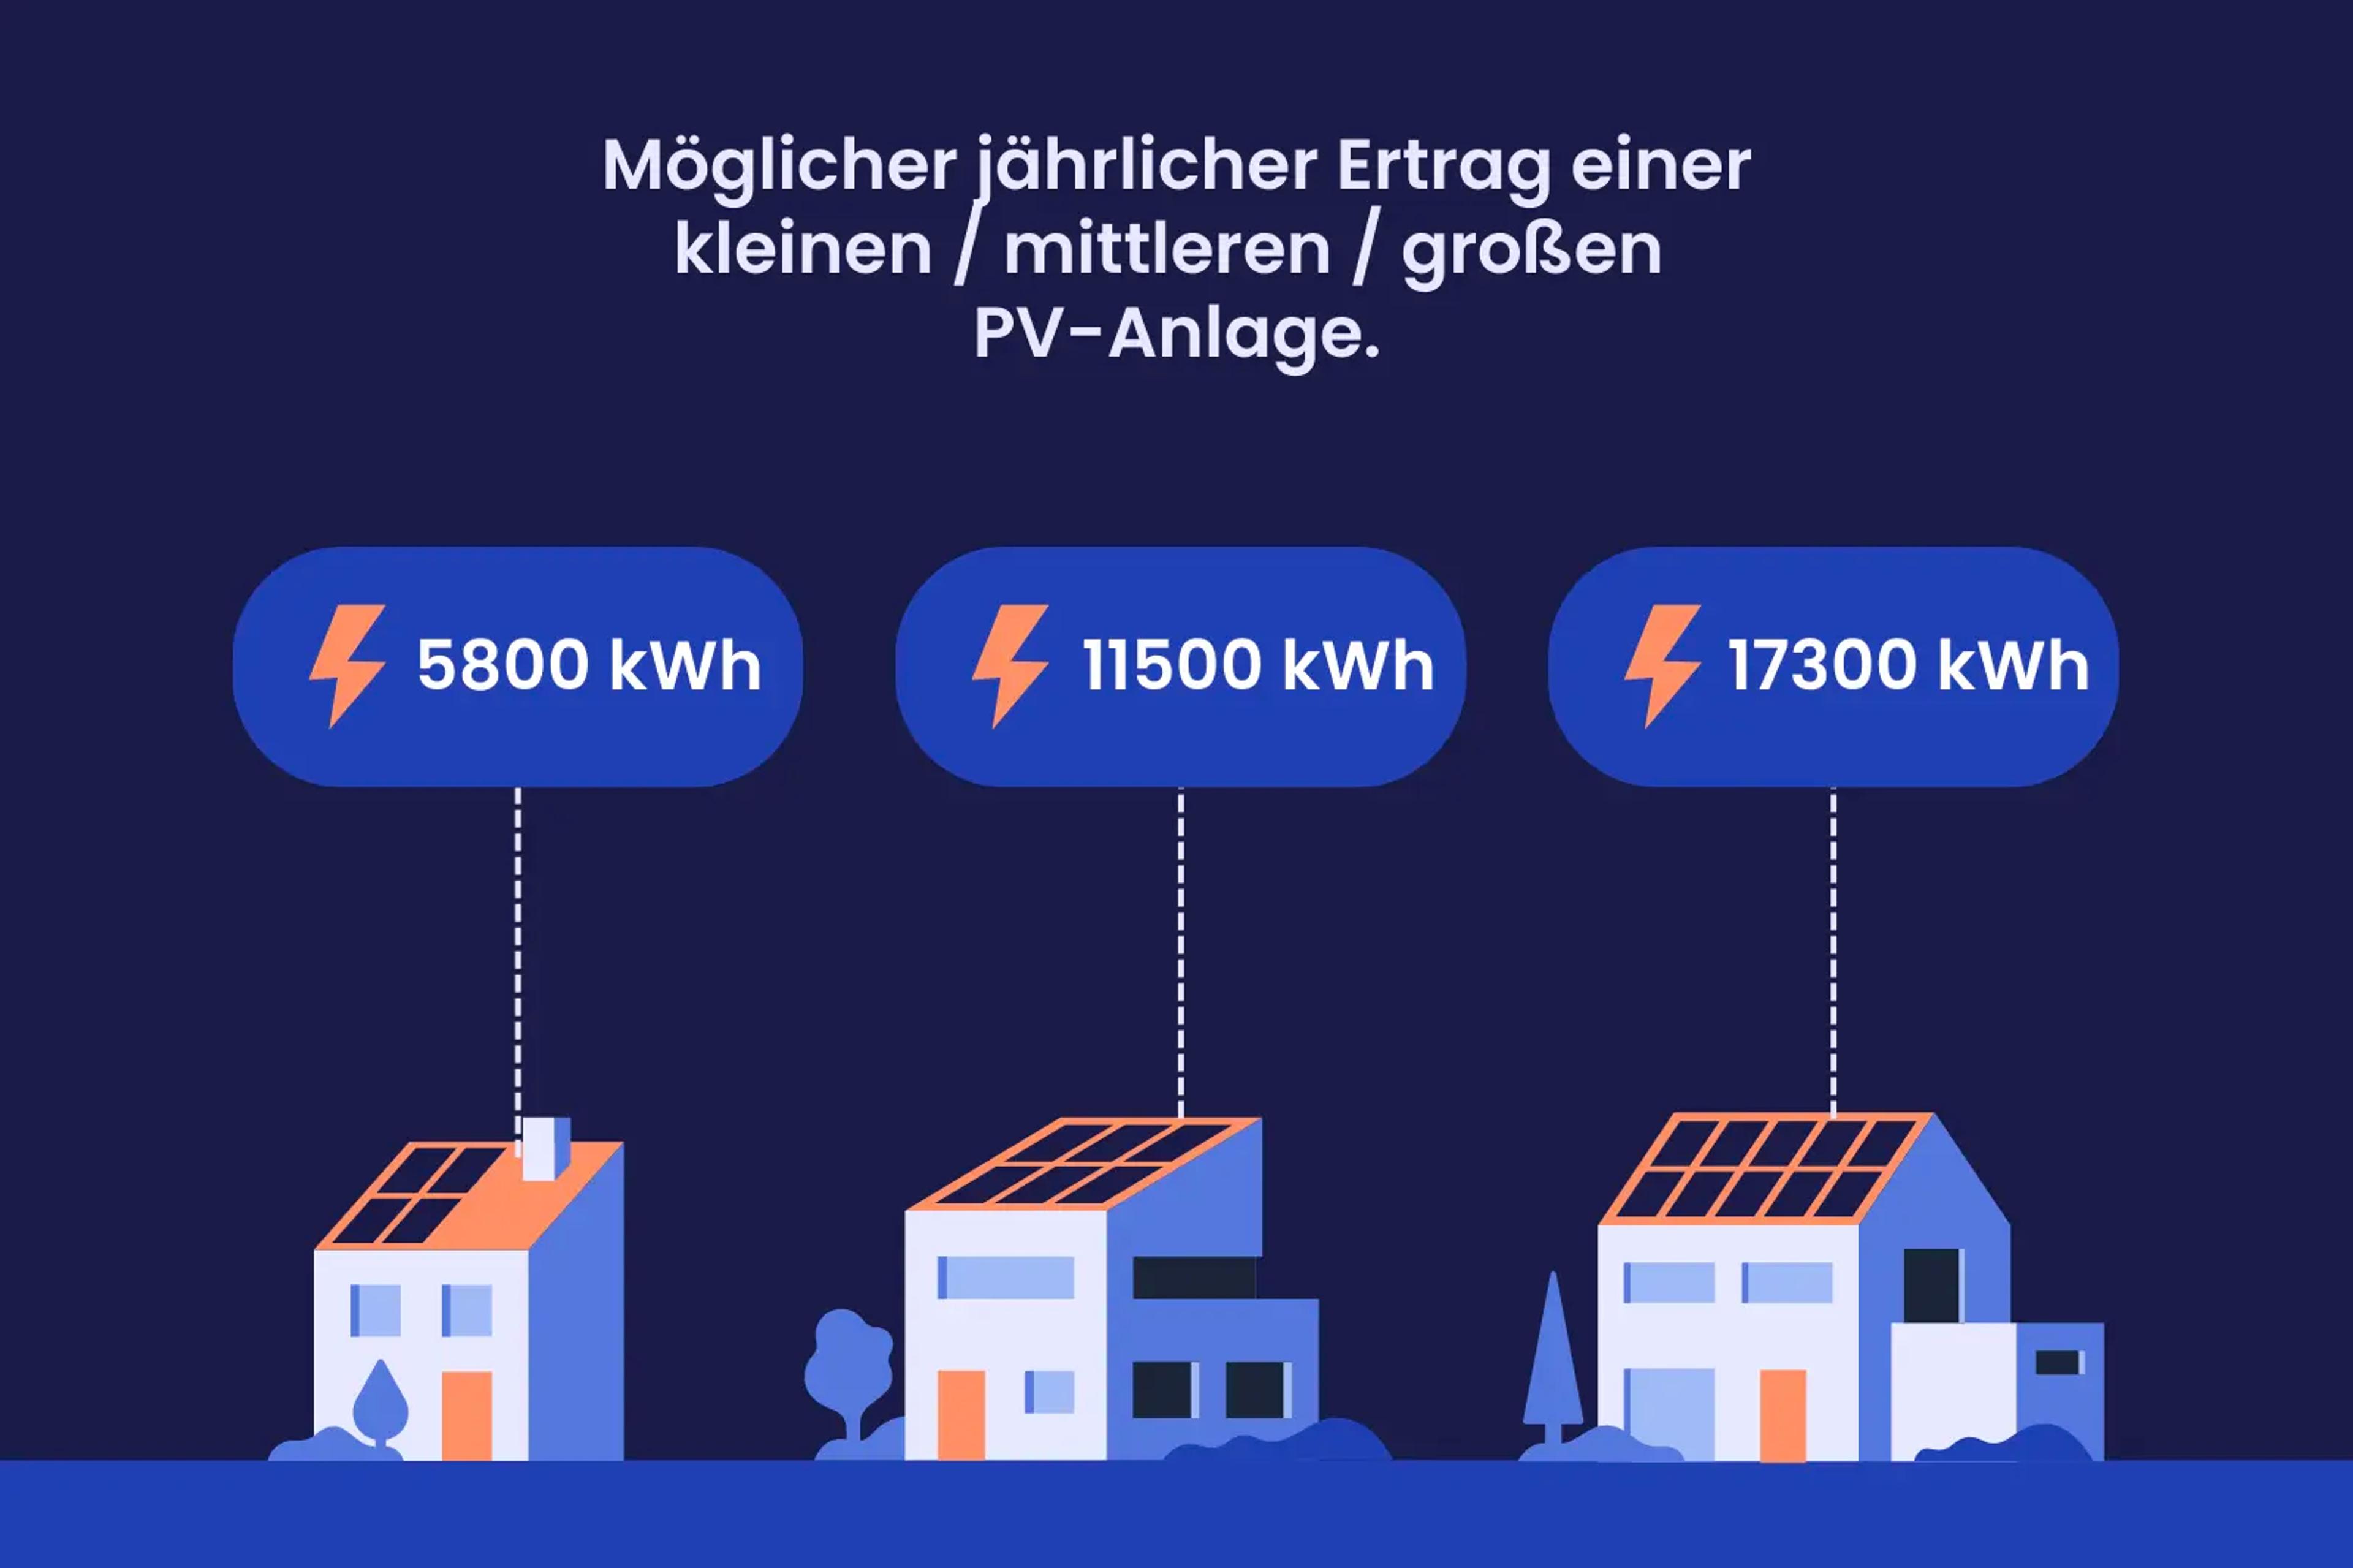 Eine Grafik, die zeigt, wie viele kWh Solaranlagen in Rheinland-Pfalz erzeugen können.